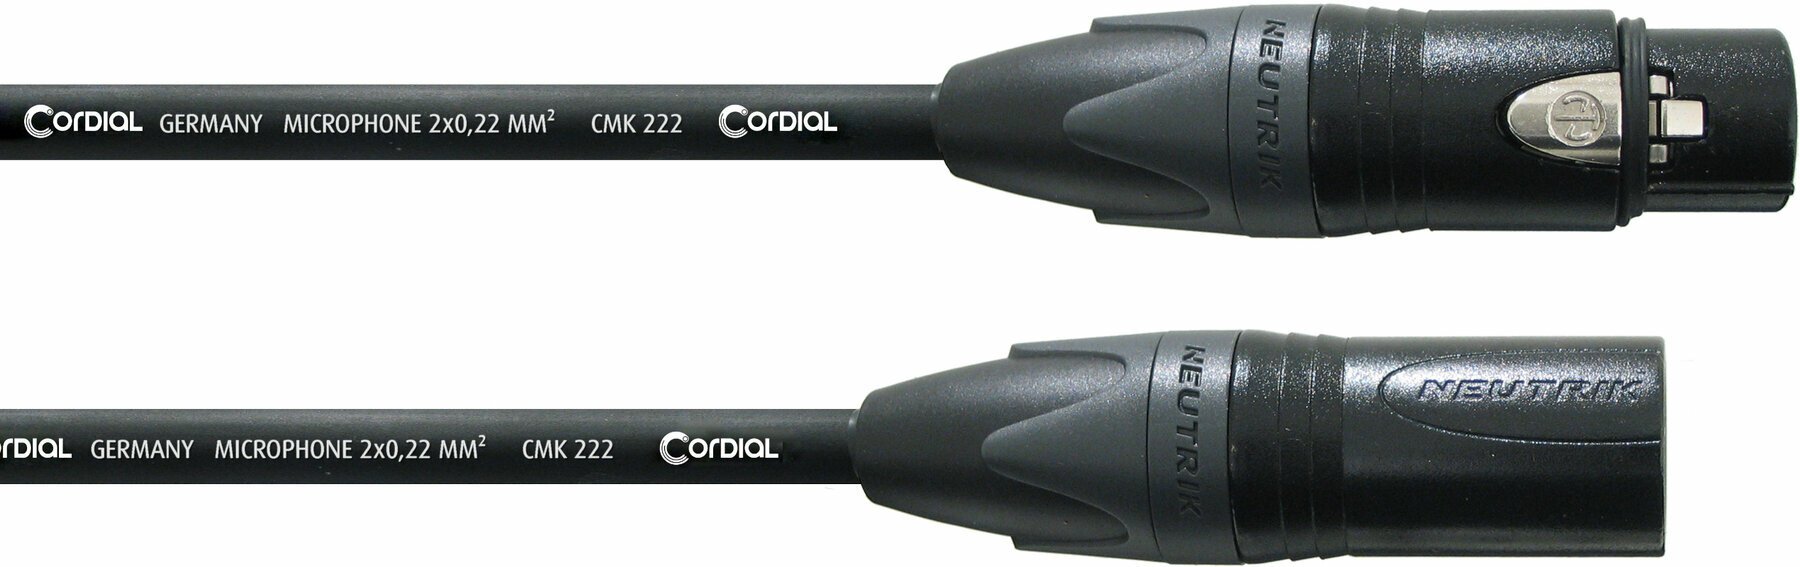 Cablu complet pentru microfoane Cordial CPM 3 FM Negru 3 m